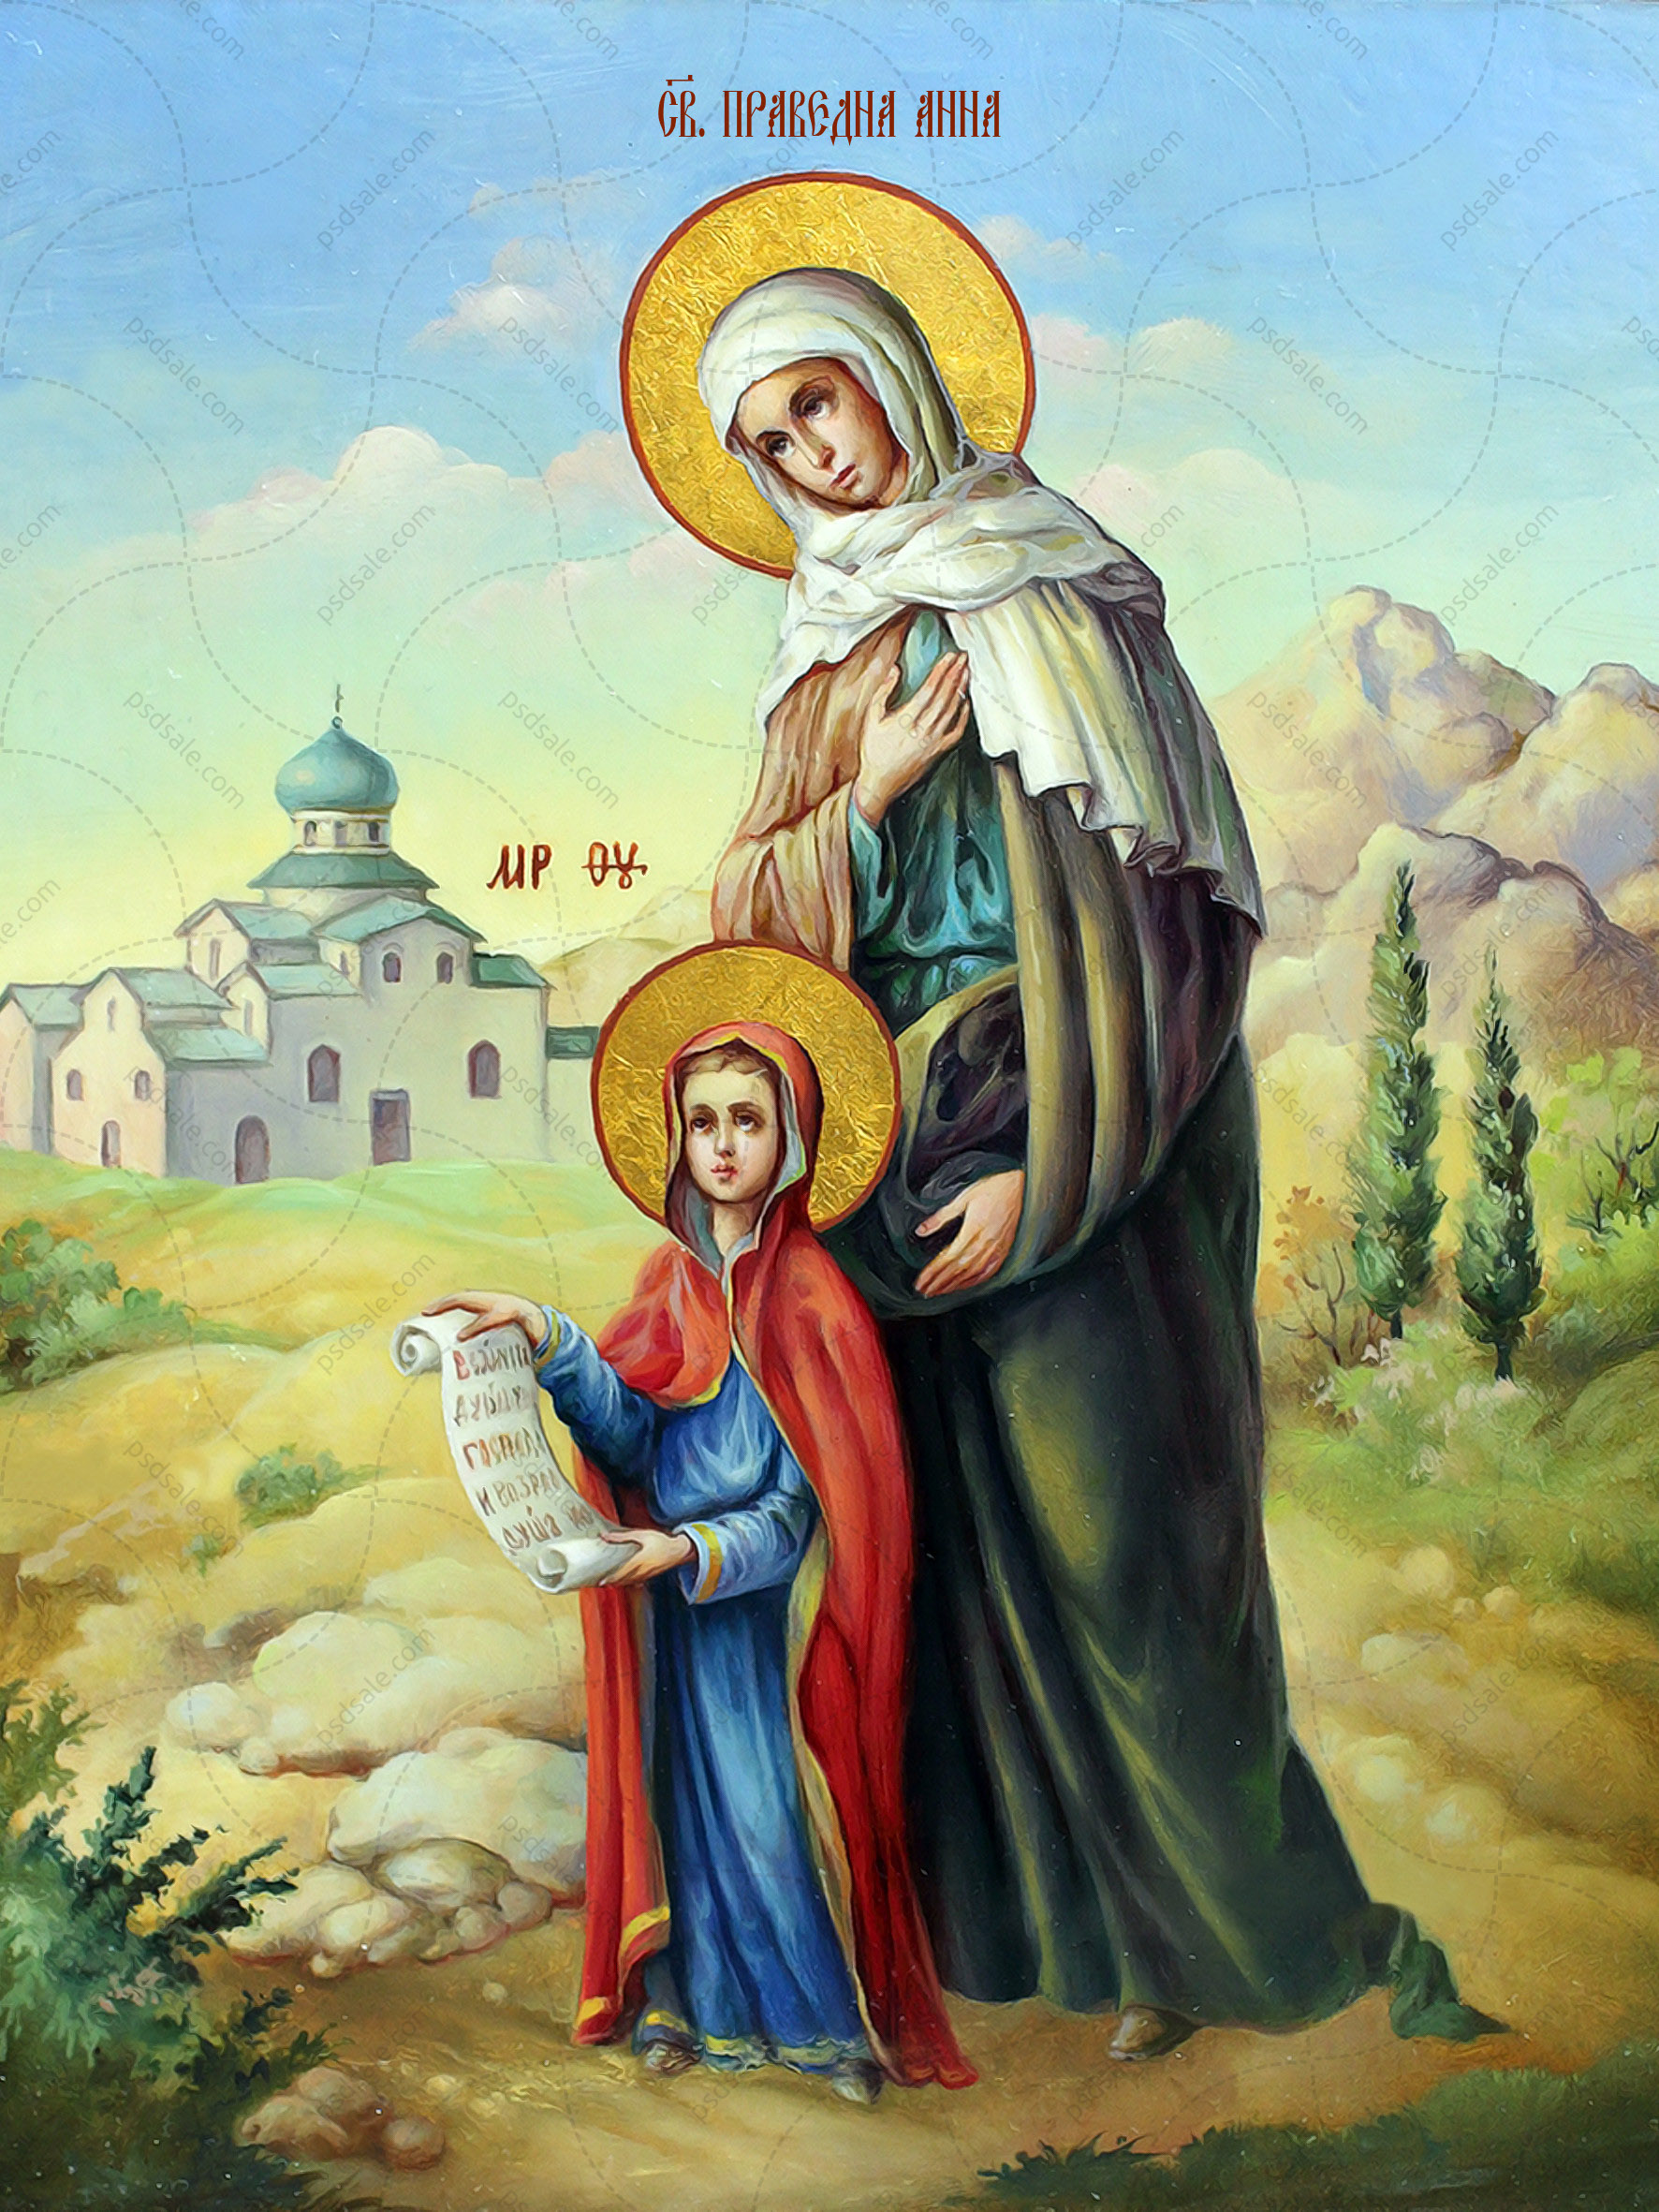 Мать святой анны. Икона праведной Анны матери Богородицы.